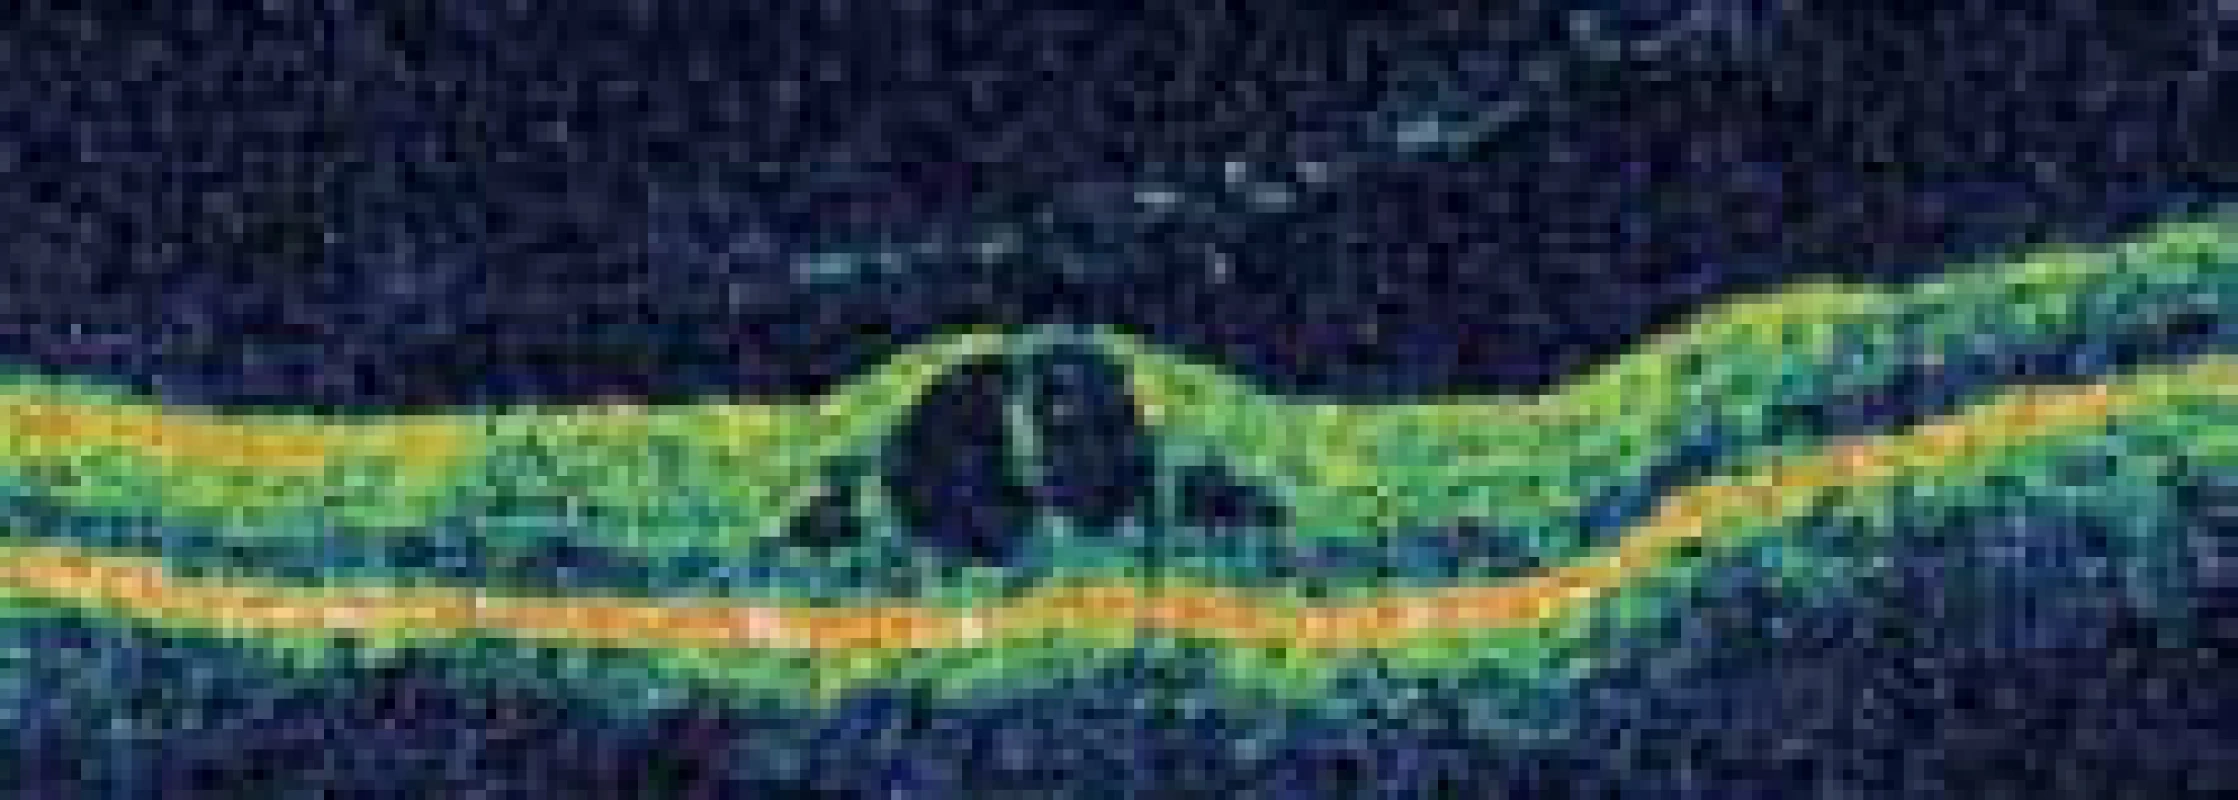 Cystoidní makulární edém levého oka zobrazený pomocí optické koherentní tomografie.